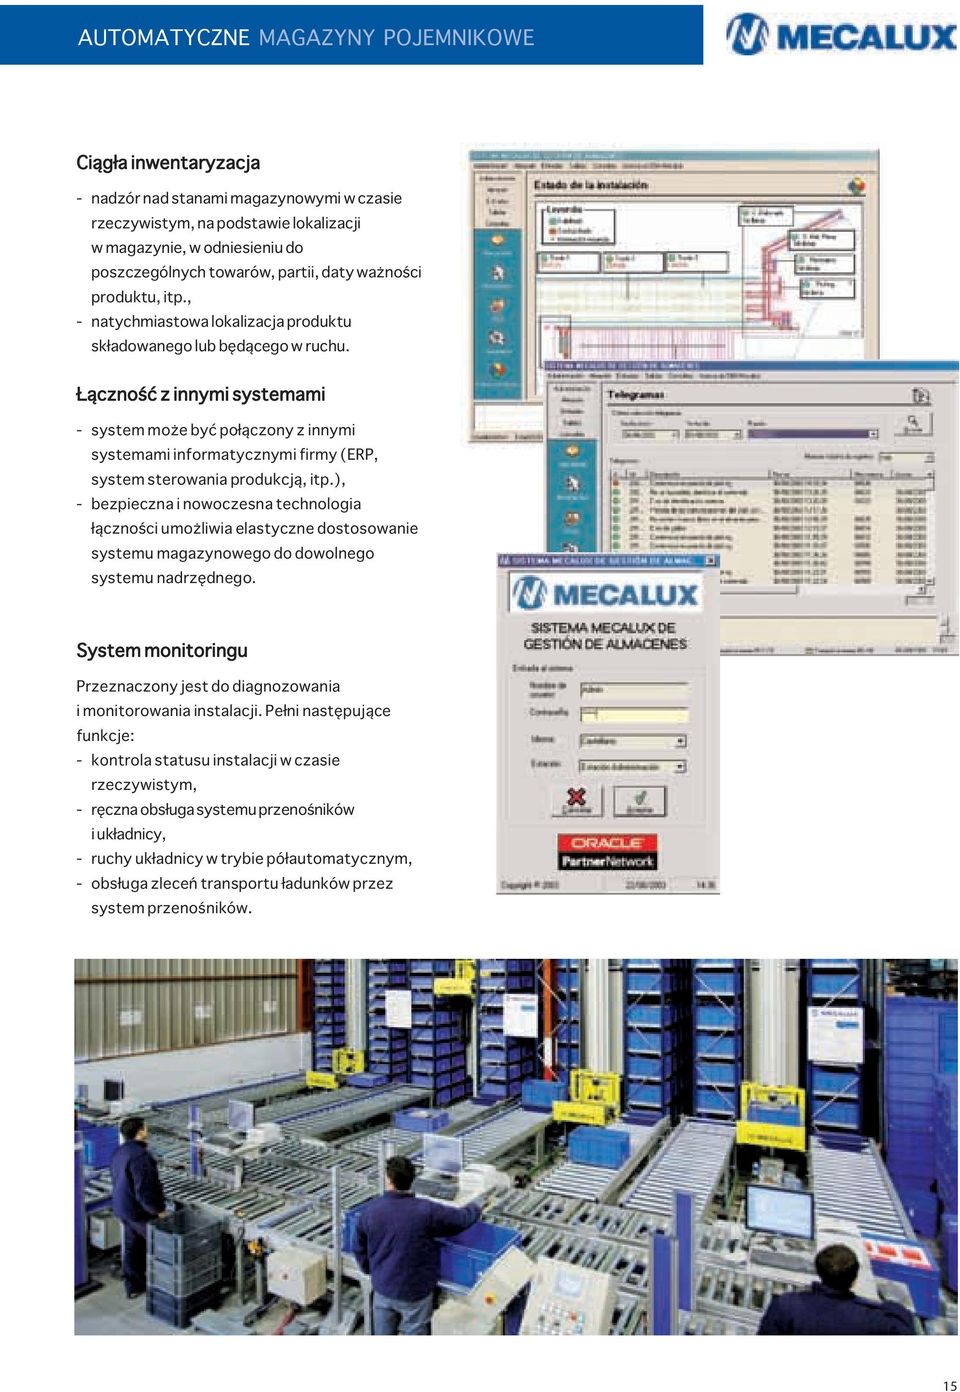 Łączność z innymi systemami - system może być połączony z innymi systemami informatycznymi firmy (ERP, system sterowania produkcją, itp.